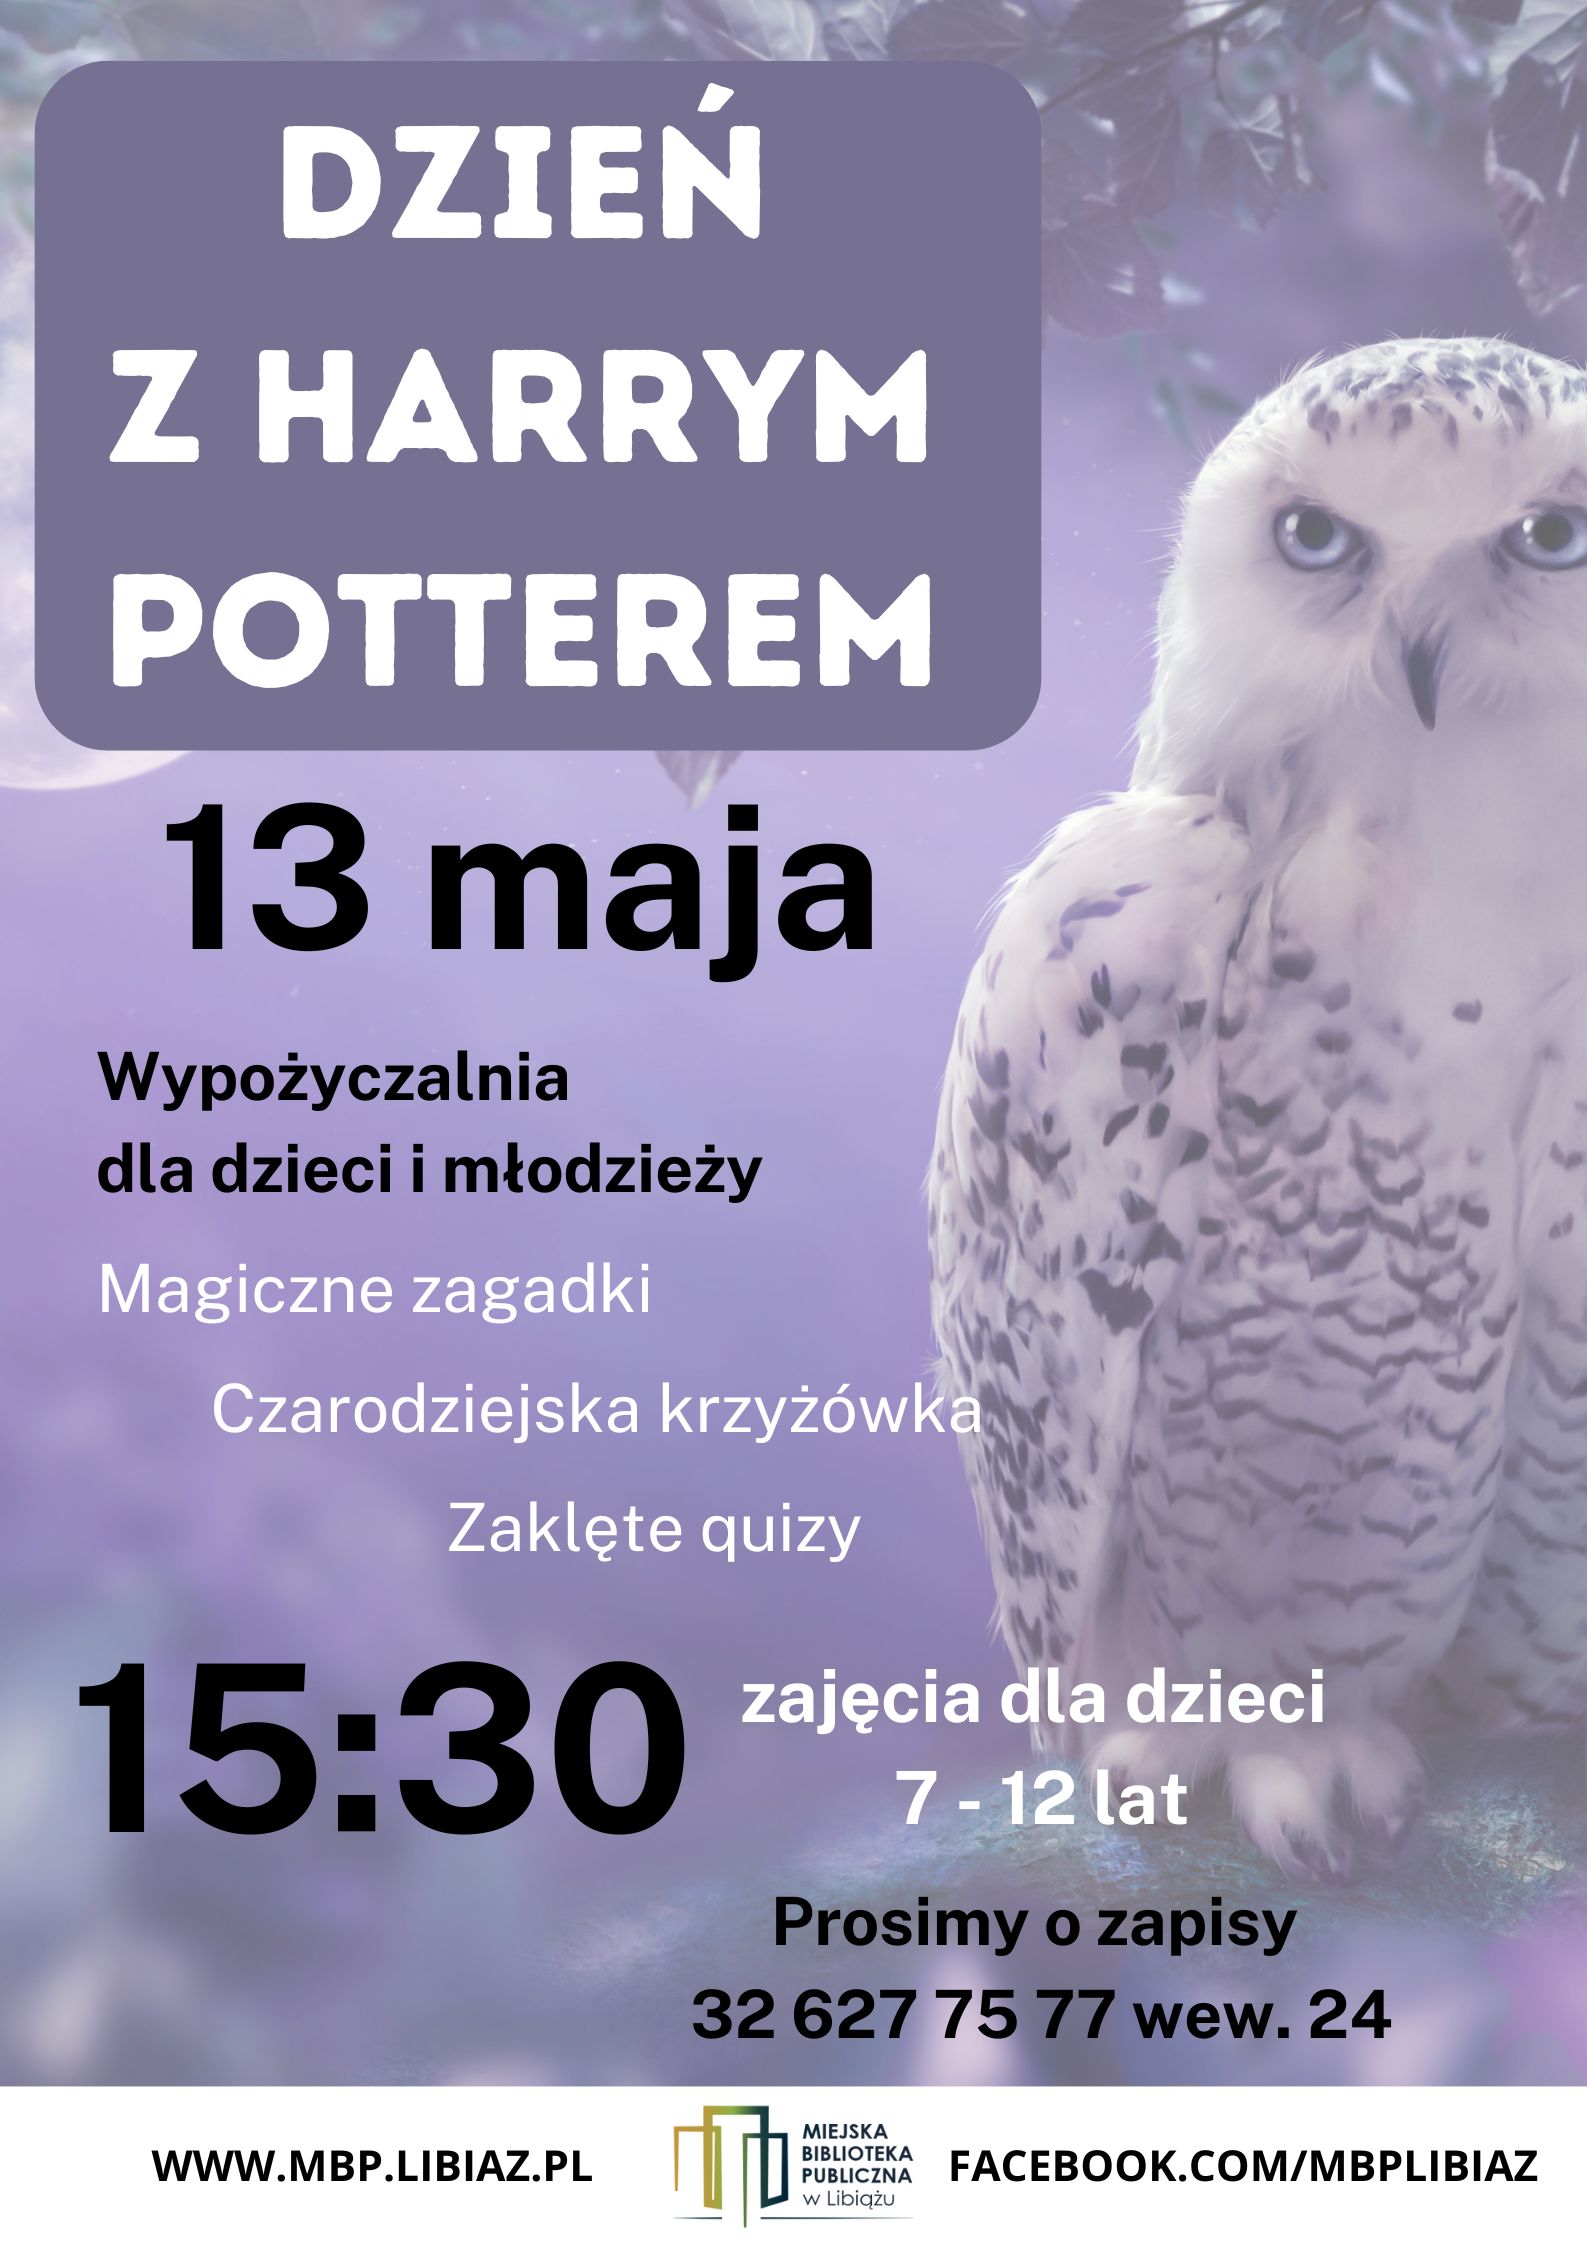 Dzień z Harrym Potterem